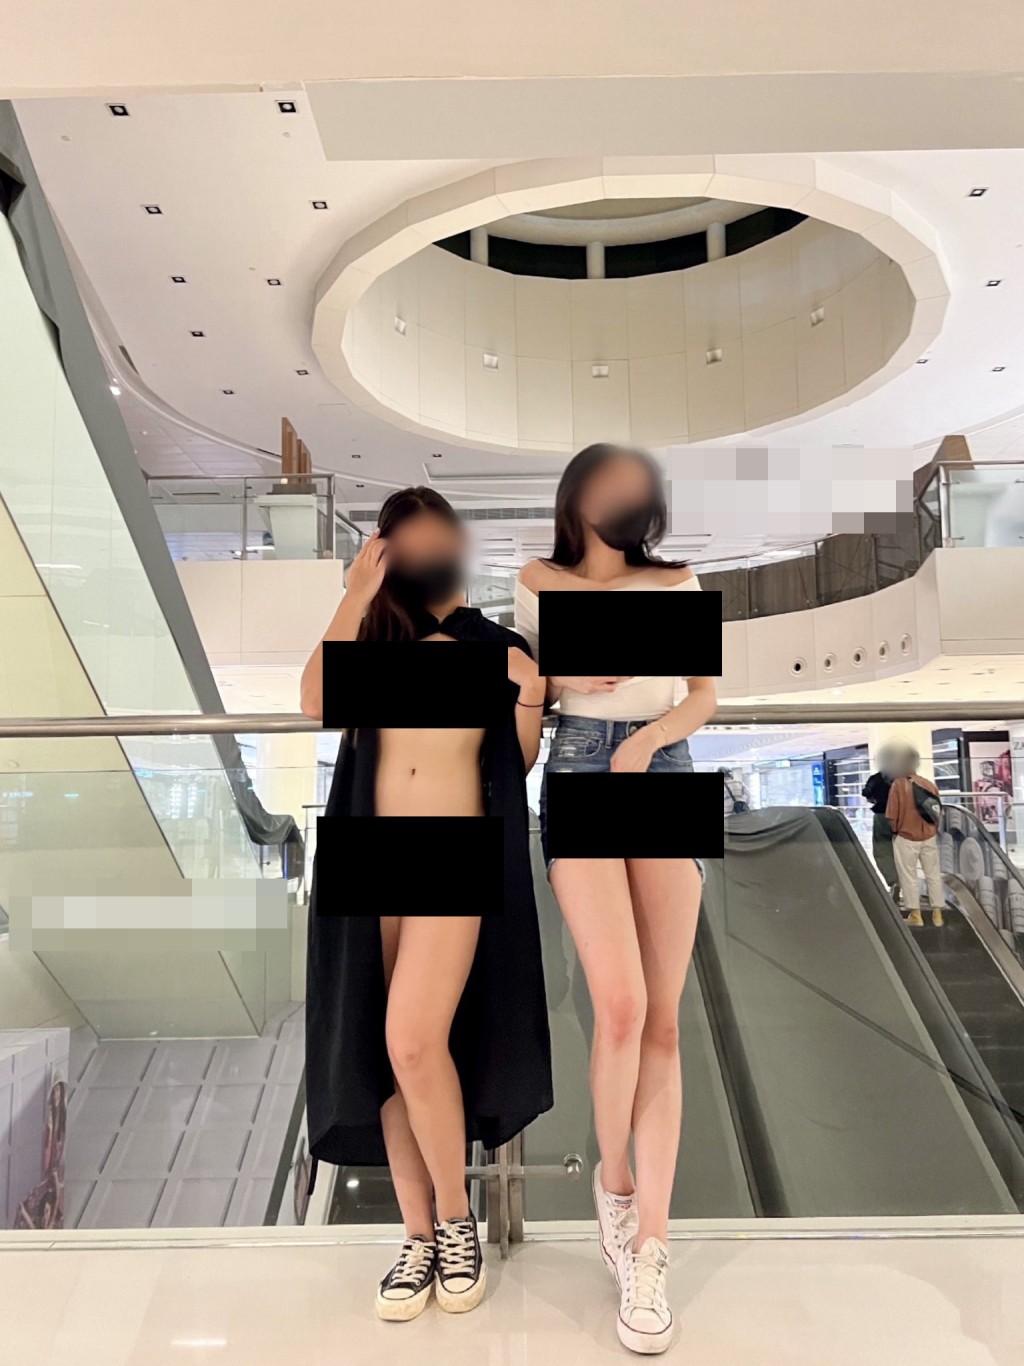 本港社交平台近年不斷湧現這類港女在公眾場所「露體」的相片